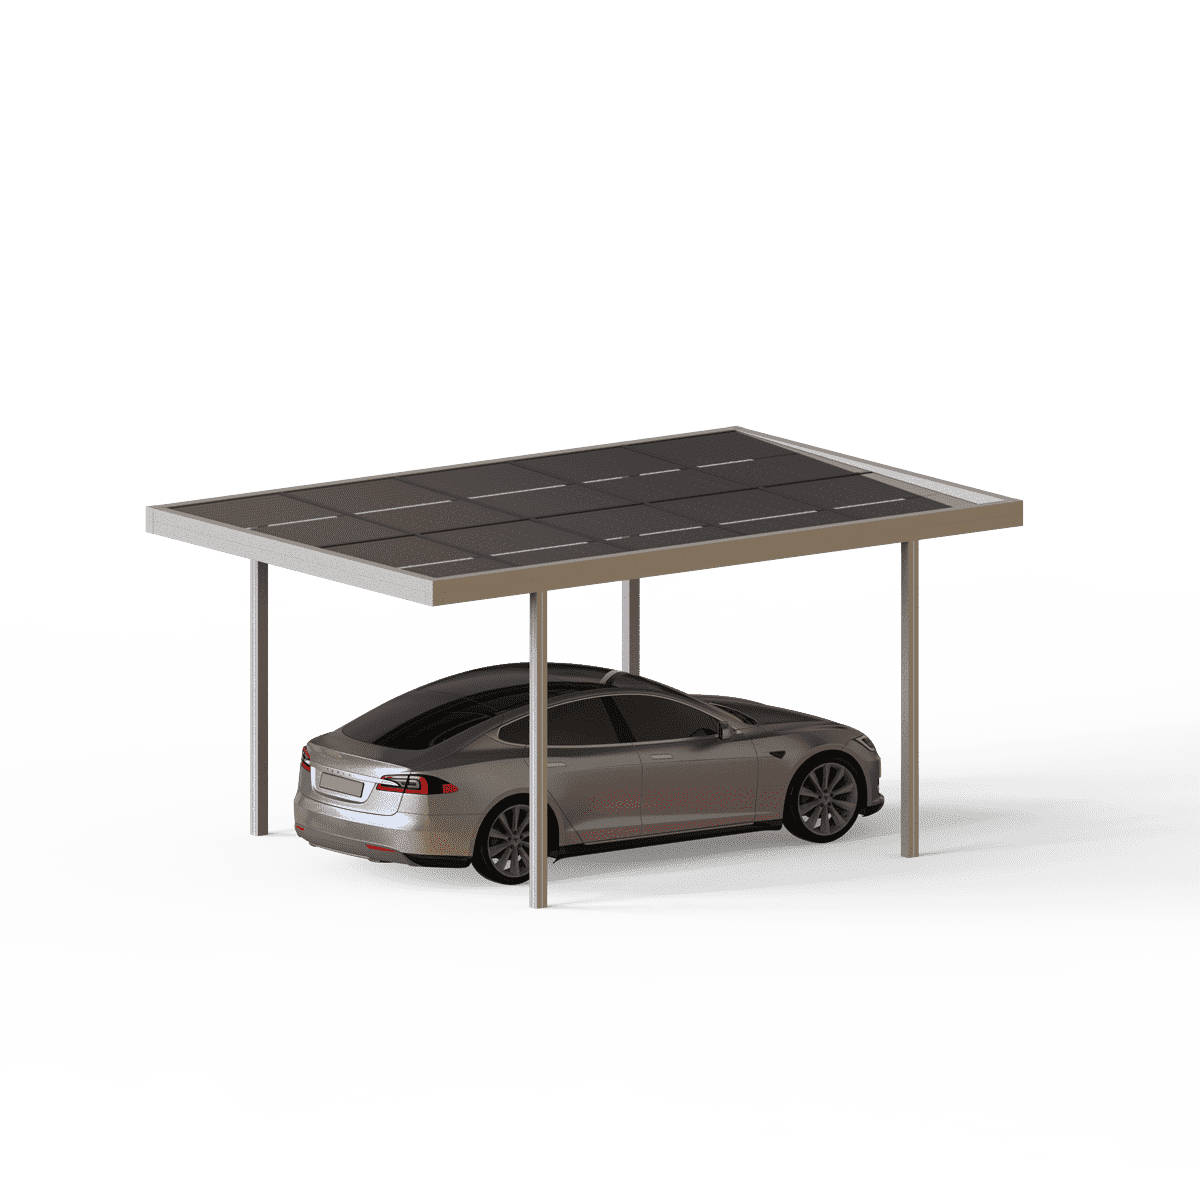 ePARK_solar_carport (16)